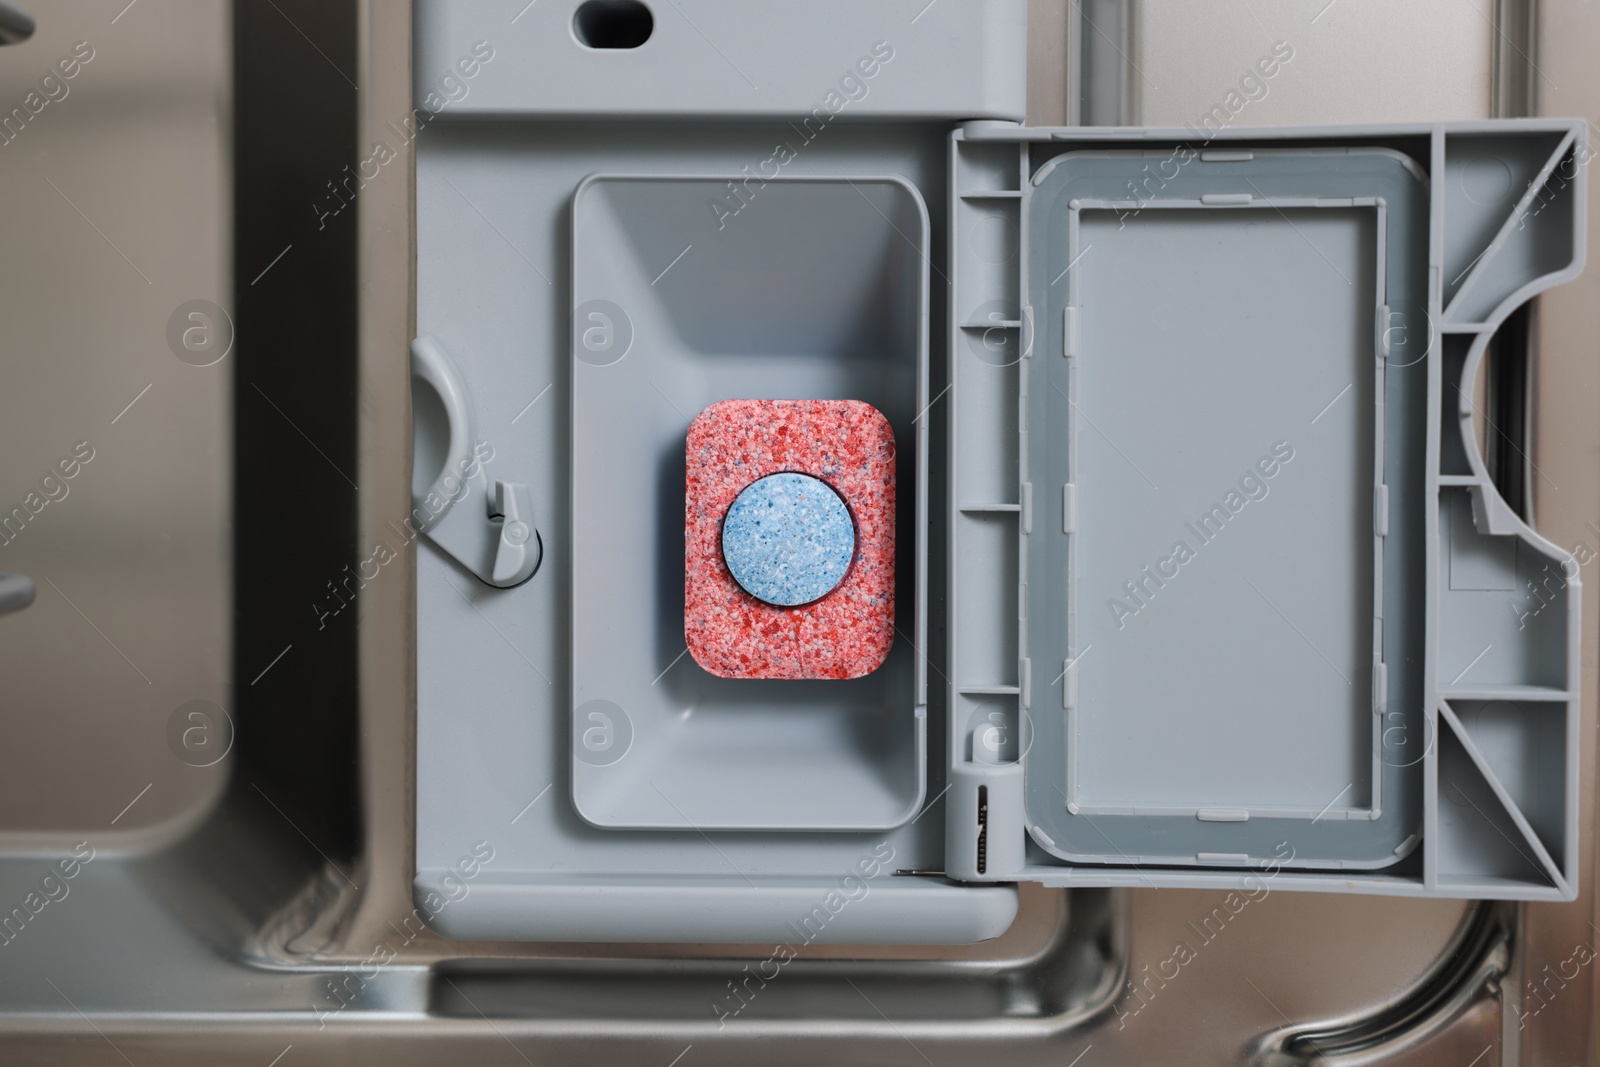 Photo of Open dishwasher door with detergent tablet, top view